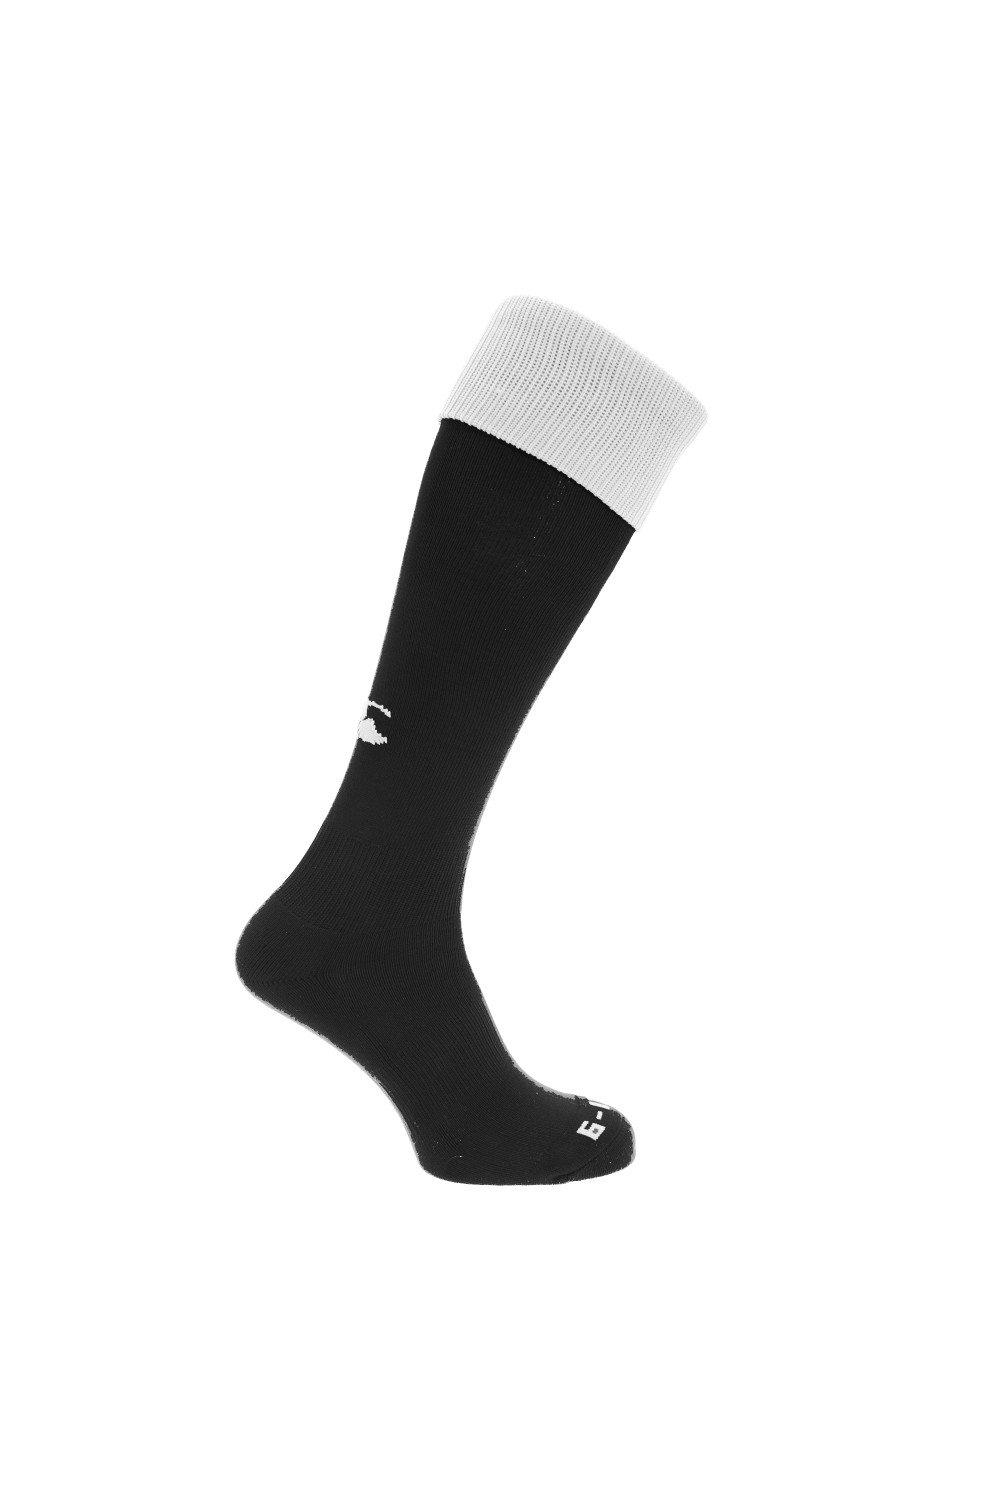 Спортивные носки для игры в регби Canterbury, черный чёрные спортивные брюки overcome с контрастными деталями